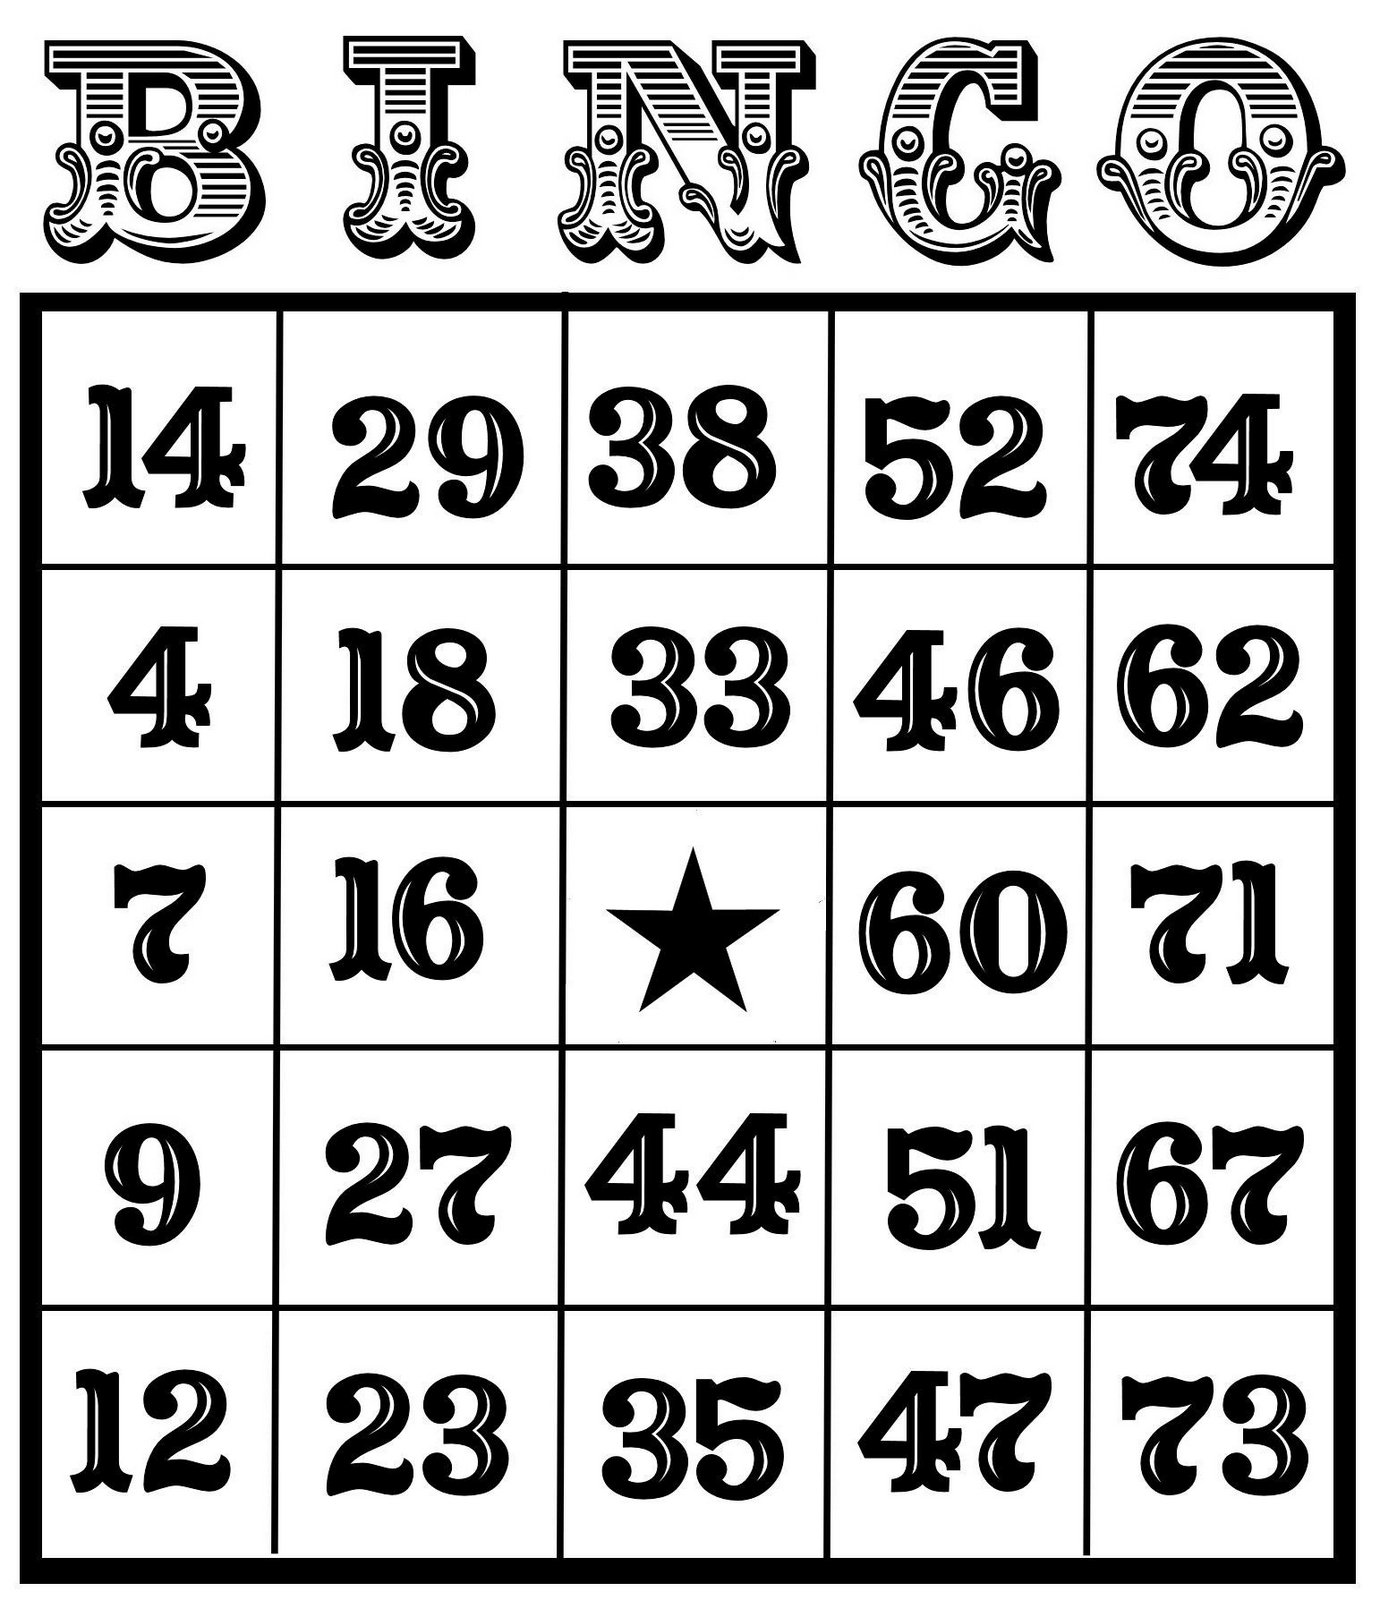 Bingo Getallen Generator